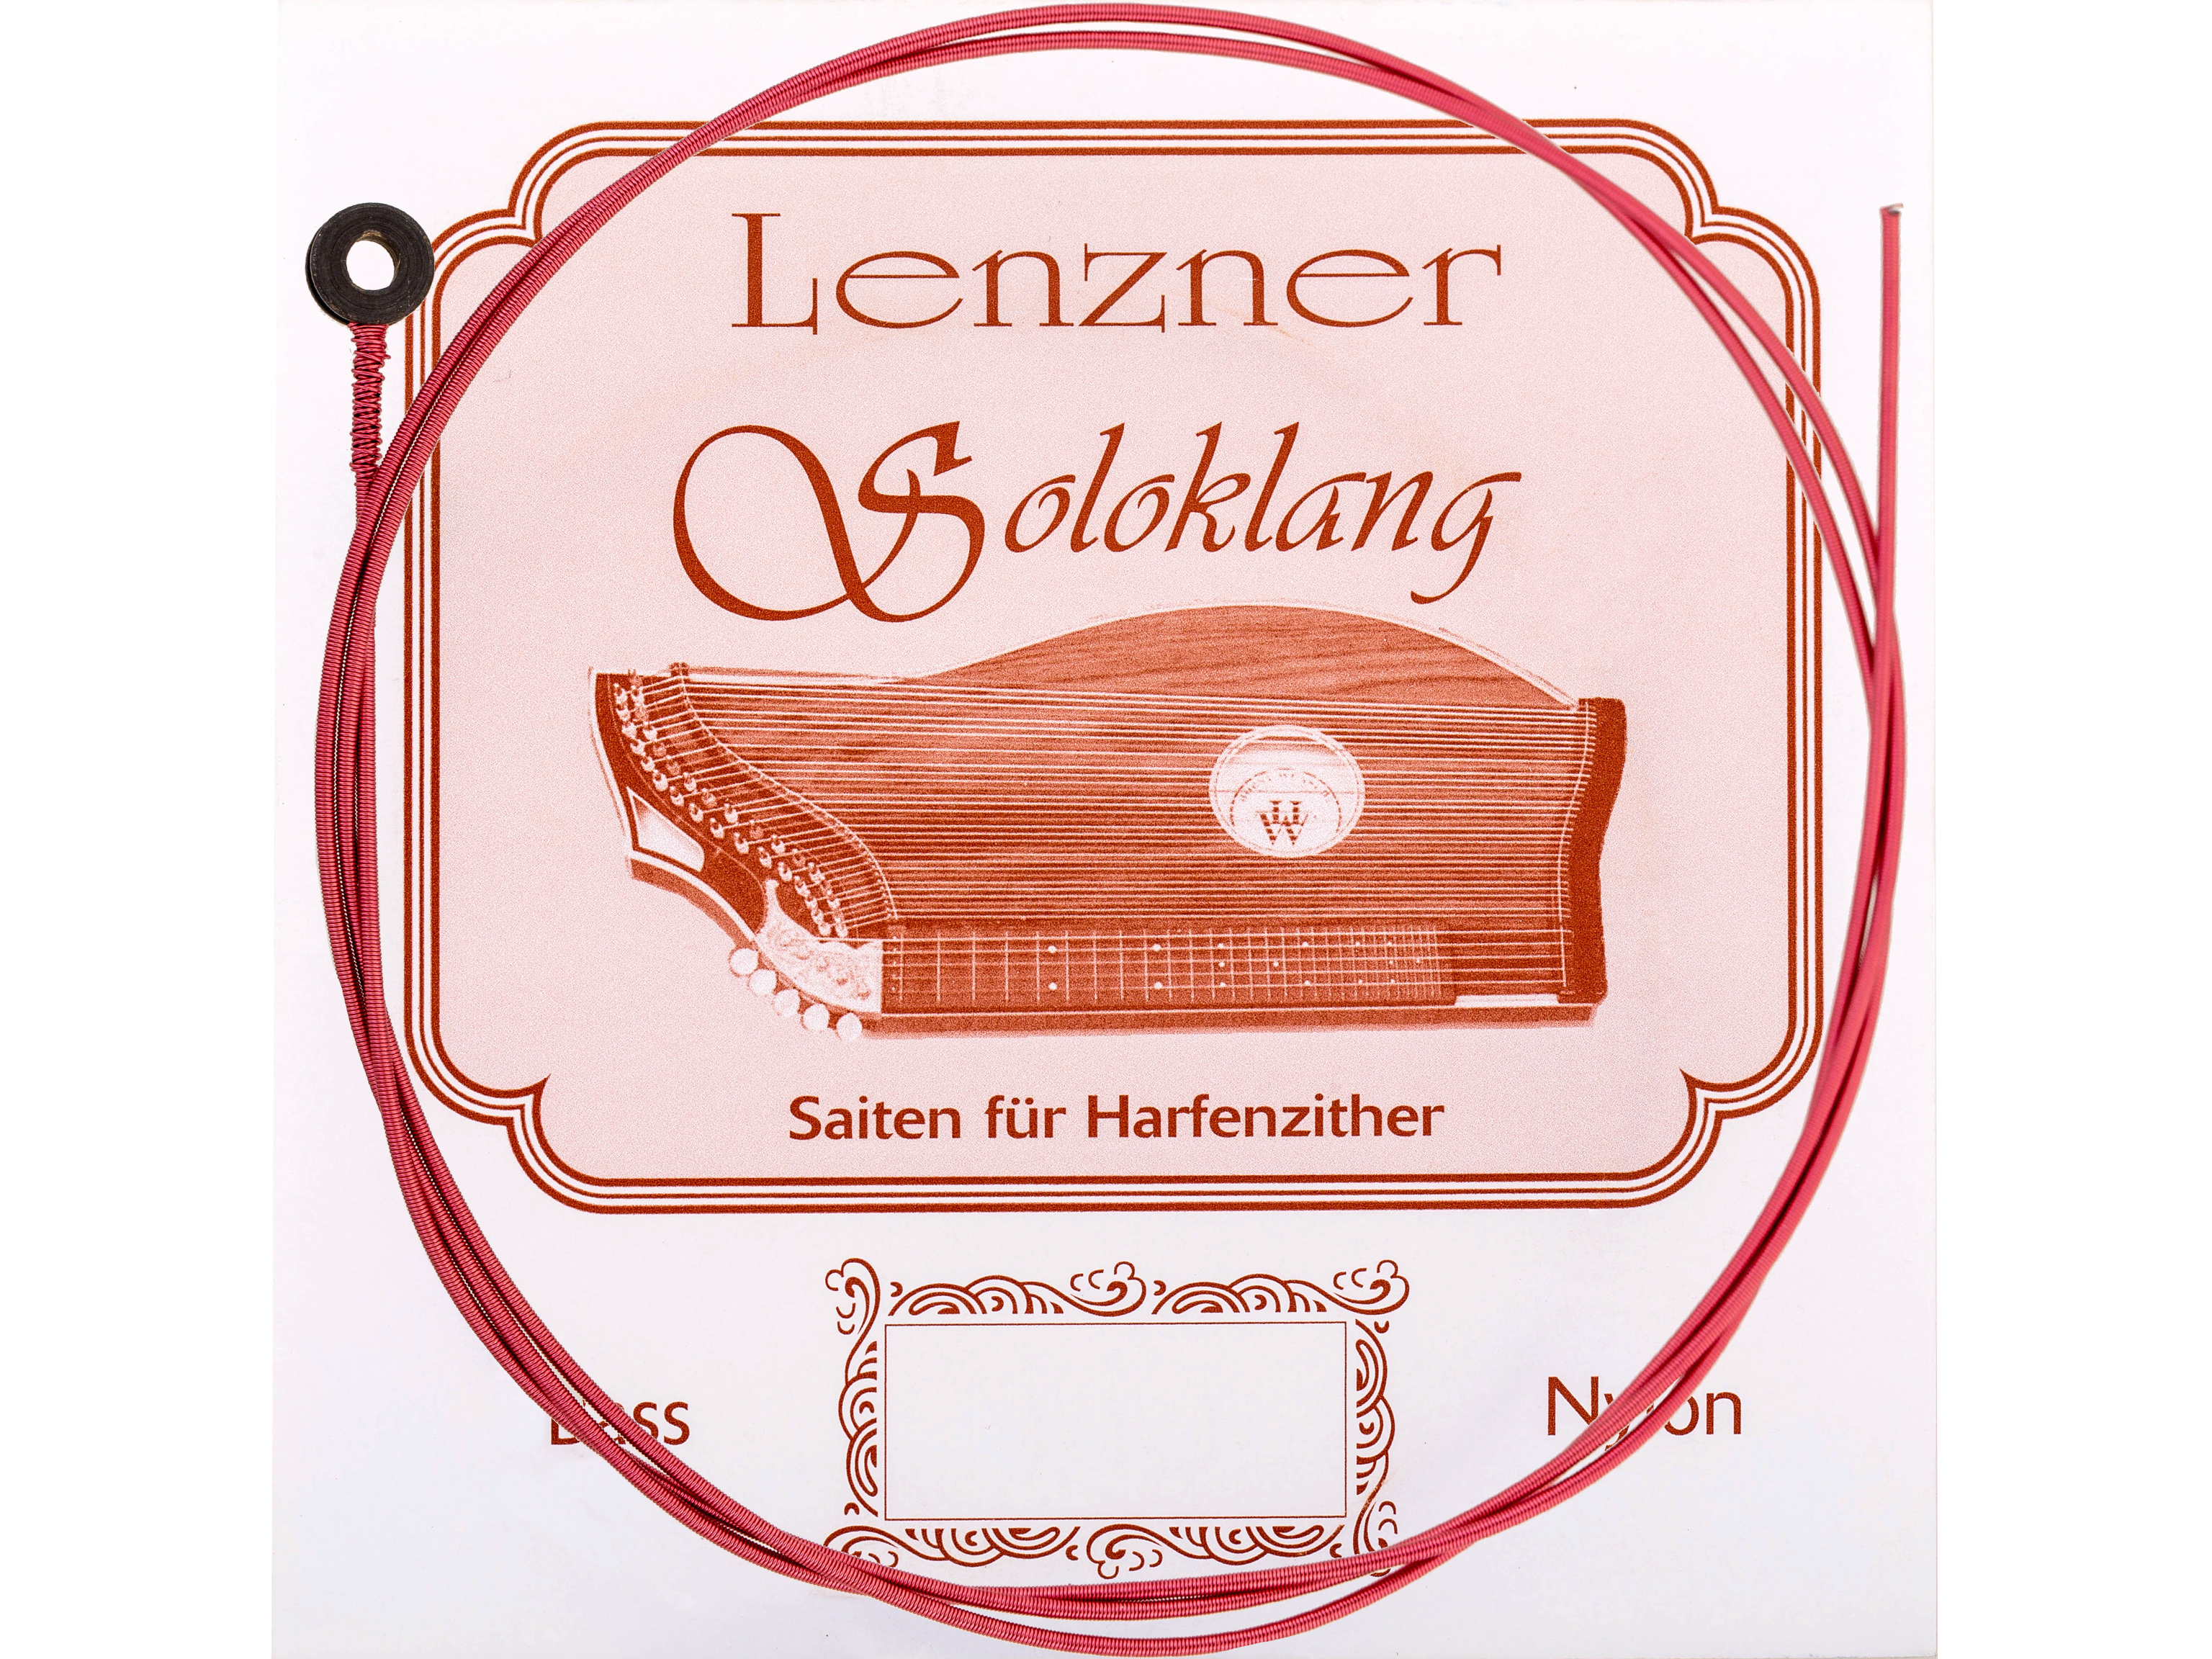 Lenzner 5500-38 Zithersaitensatz Soloklang